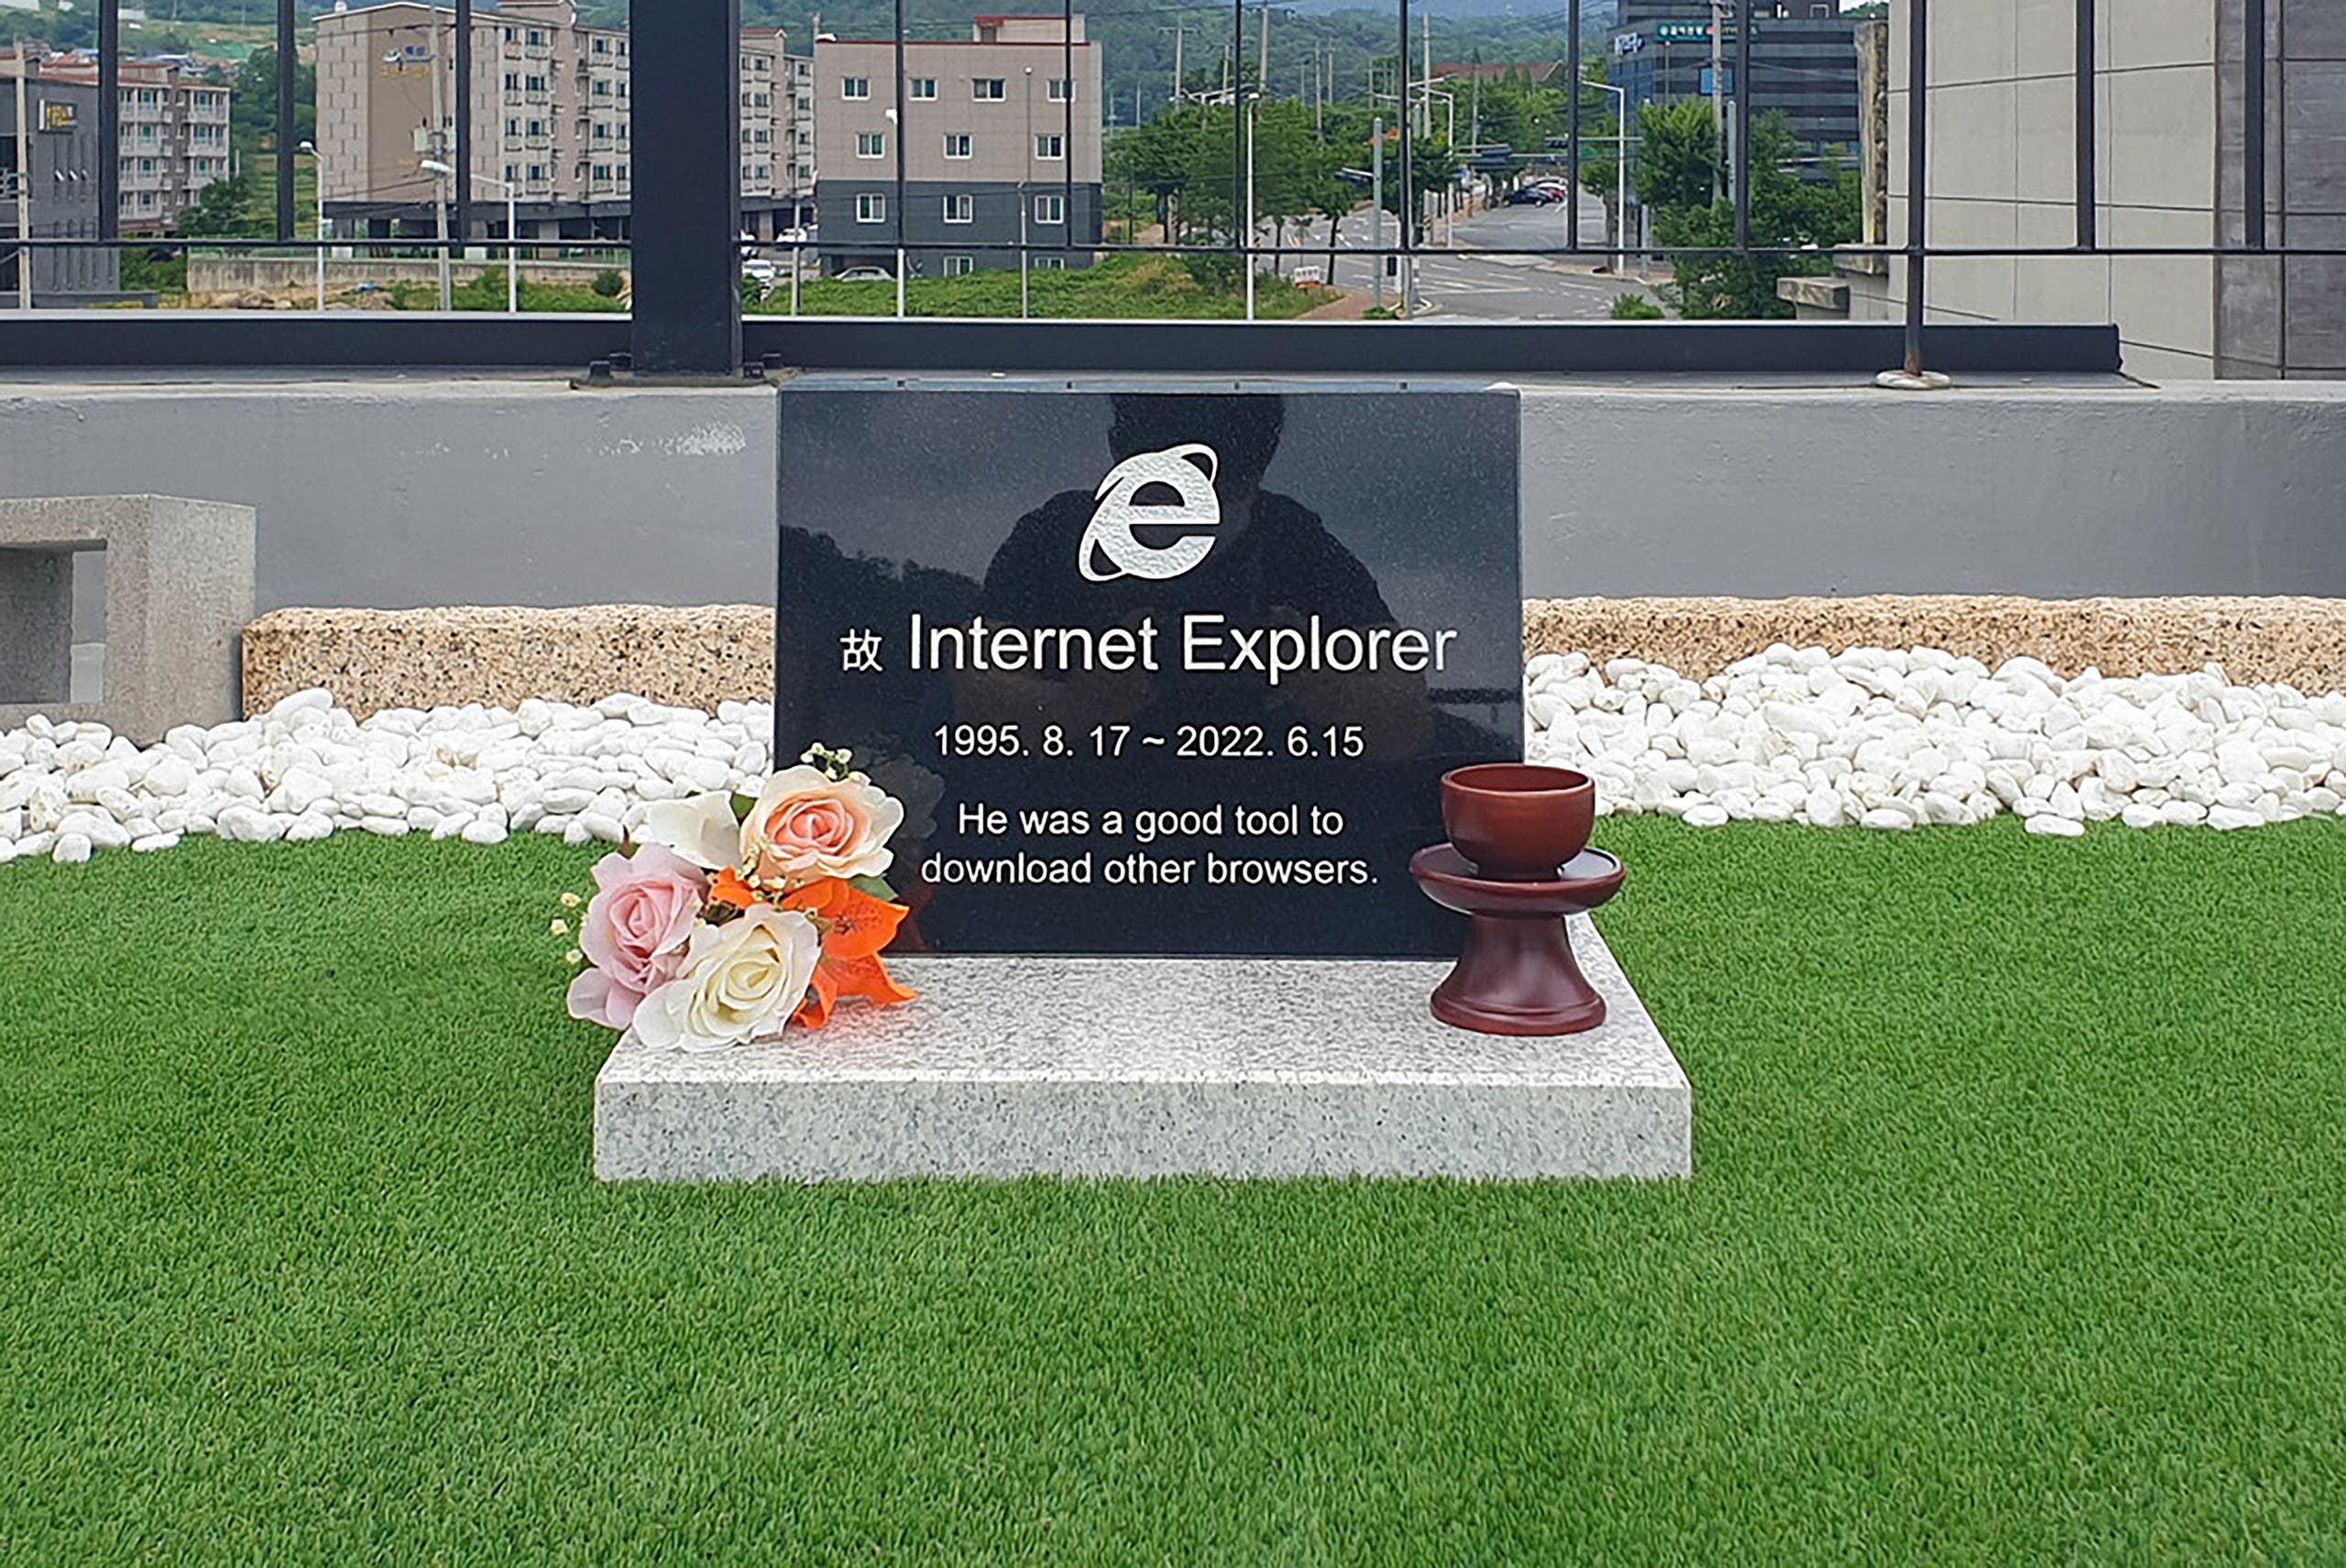 "مقبرة" إنترنت إكسبلورر على سطح مقهى في كوريا الجنوبية